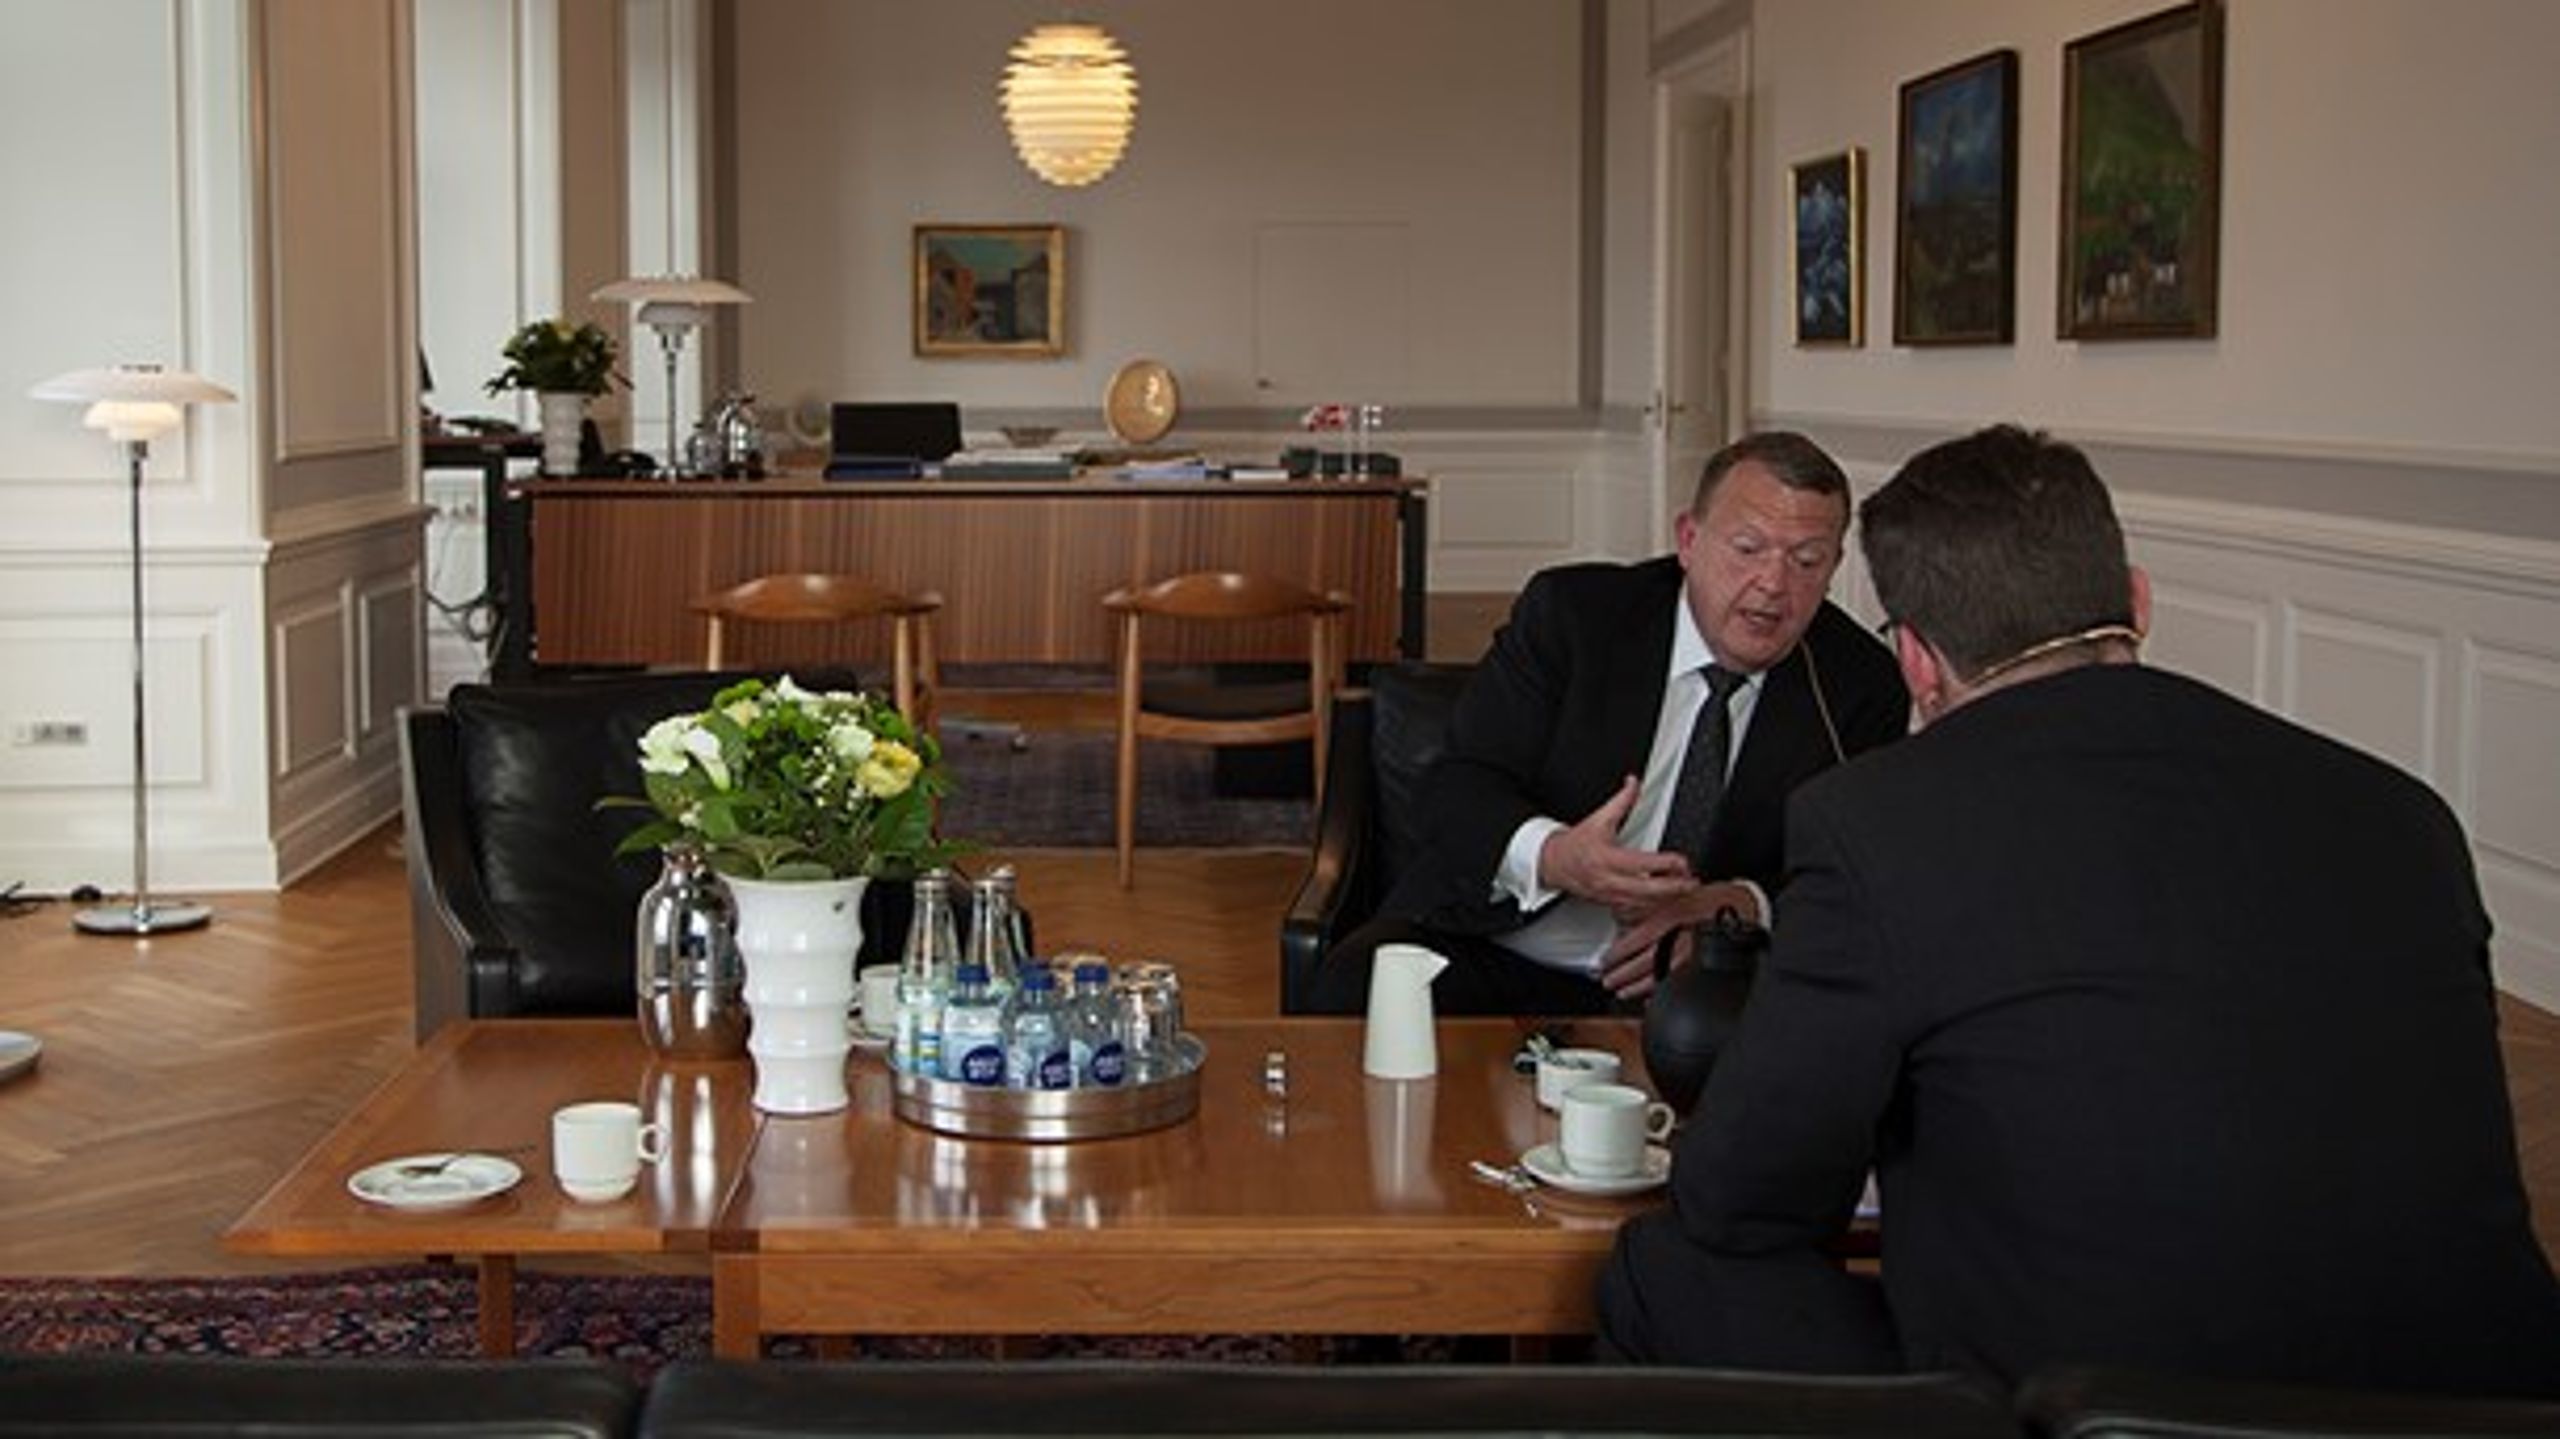 Danmark vil ikke betale mere til EU i fremtiden, siger statsminister Lars Løkke Rasmussen (V), som her bliver interviewet til Altingets europæiske podcast.